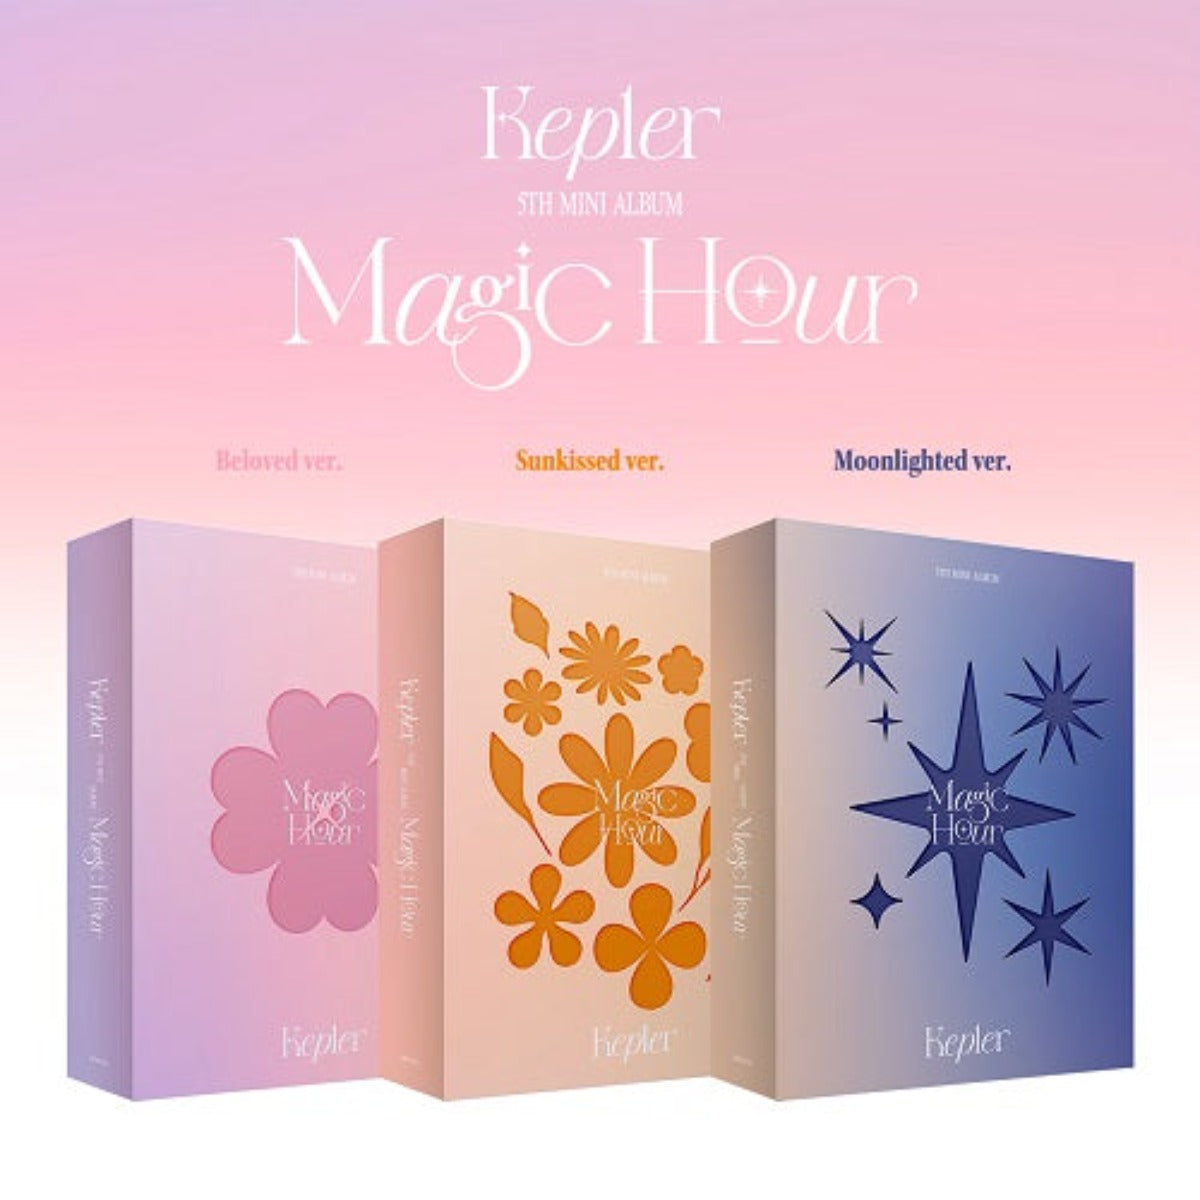 Kep1er Mini Album Vol. 5 - Magic Hour